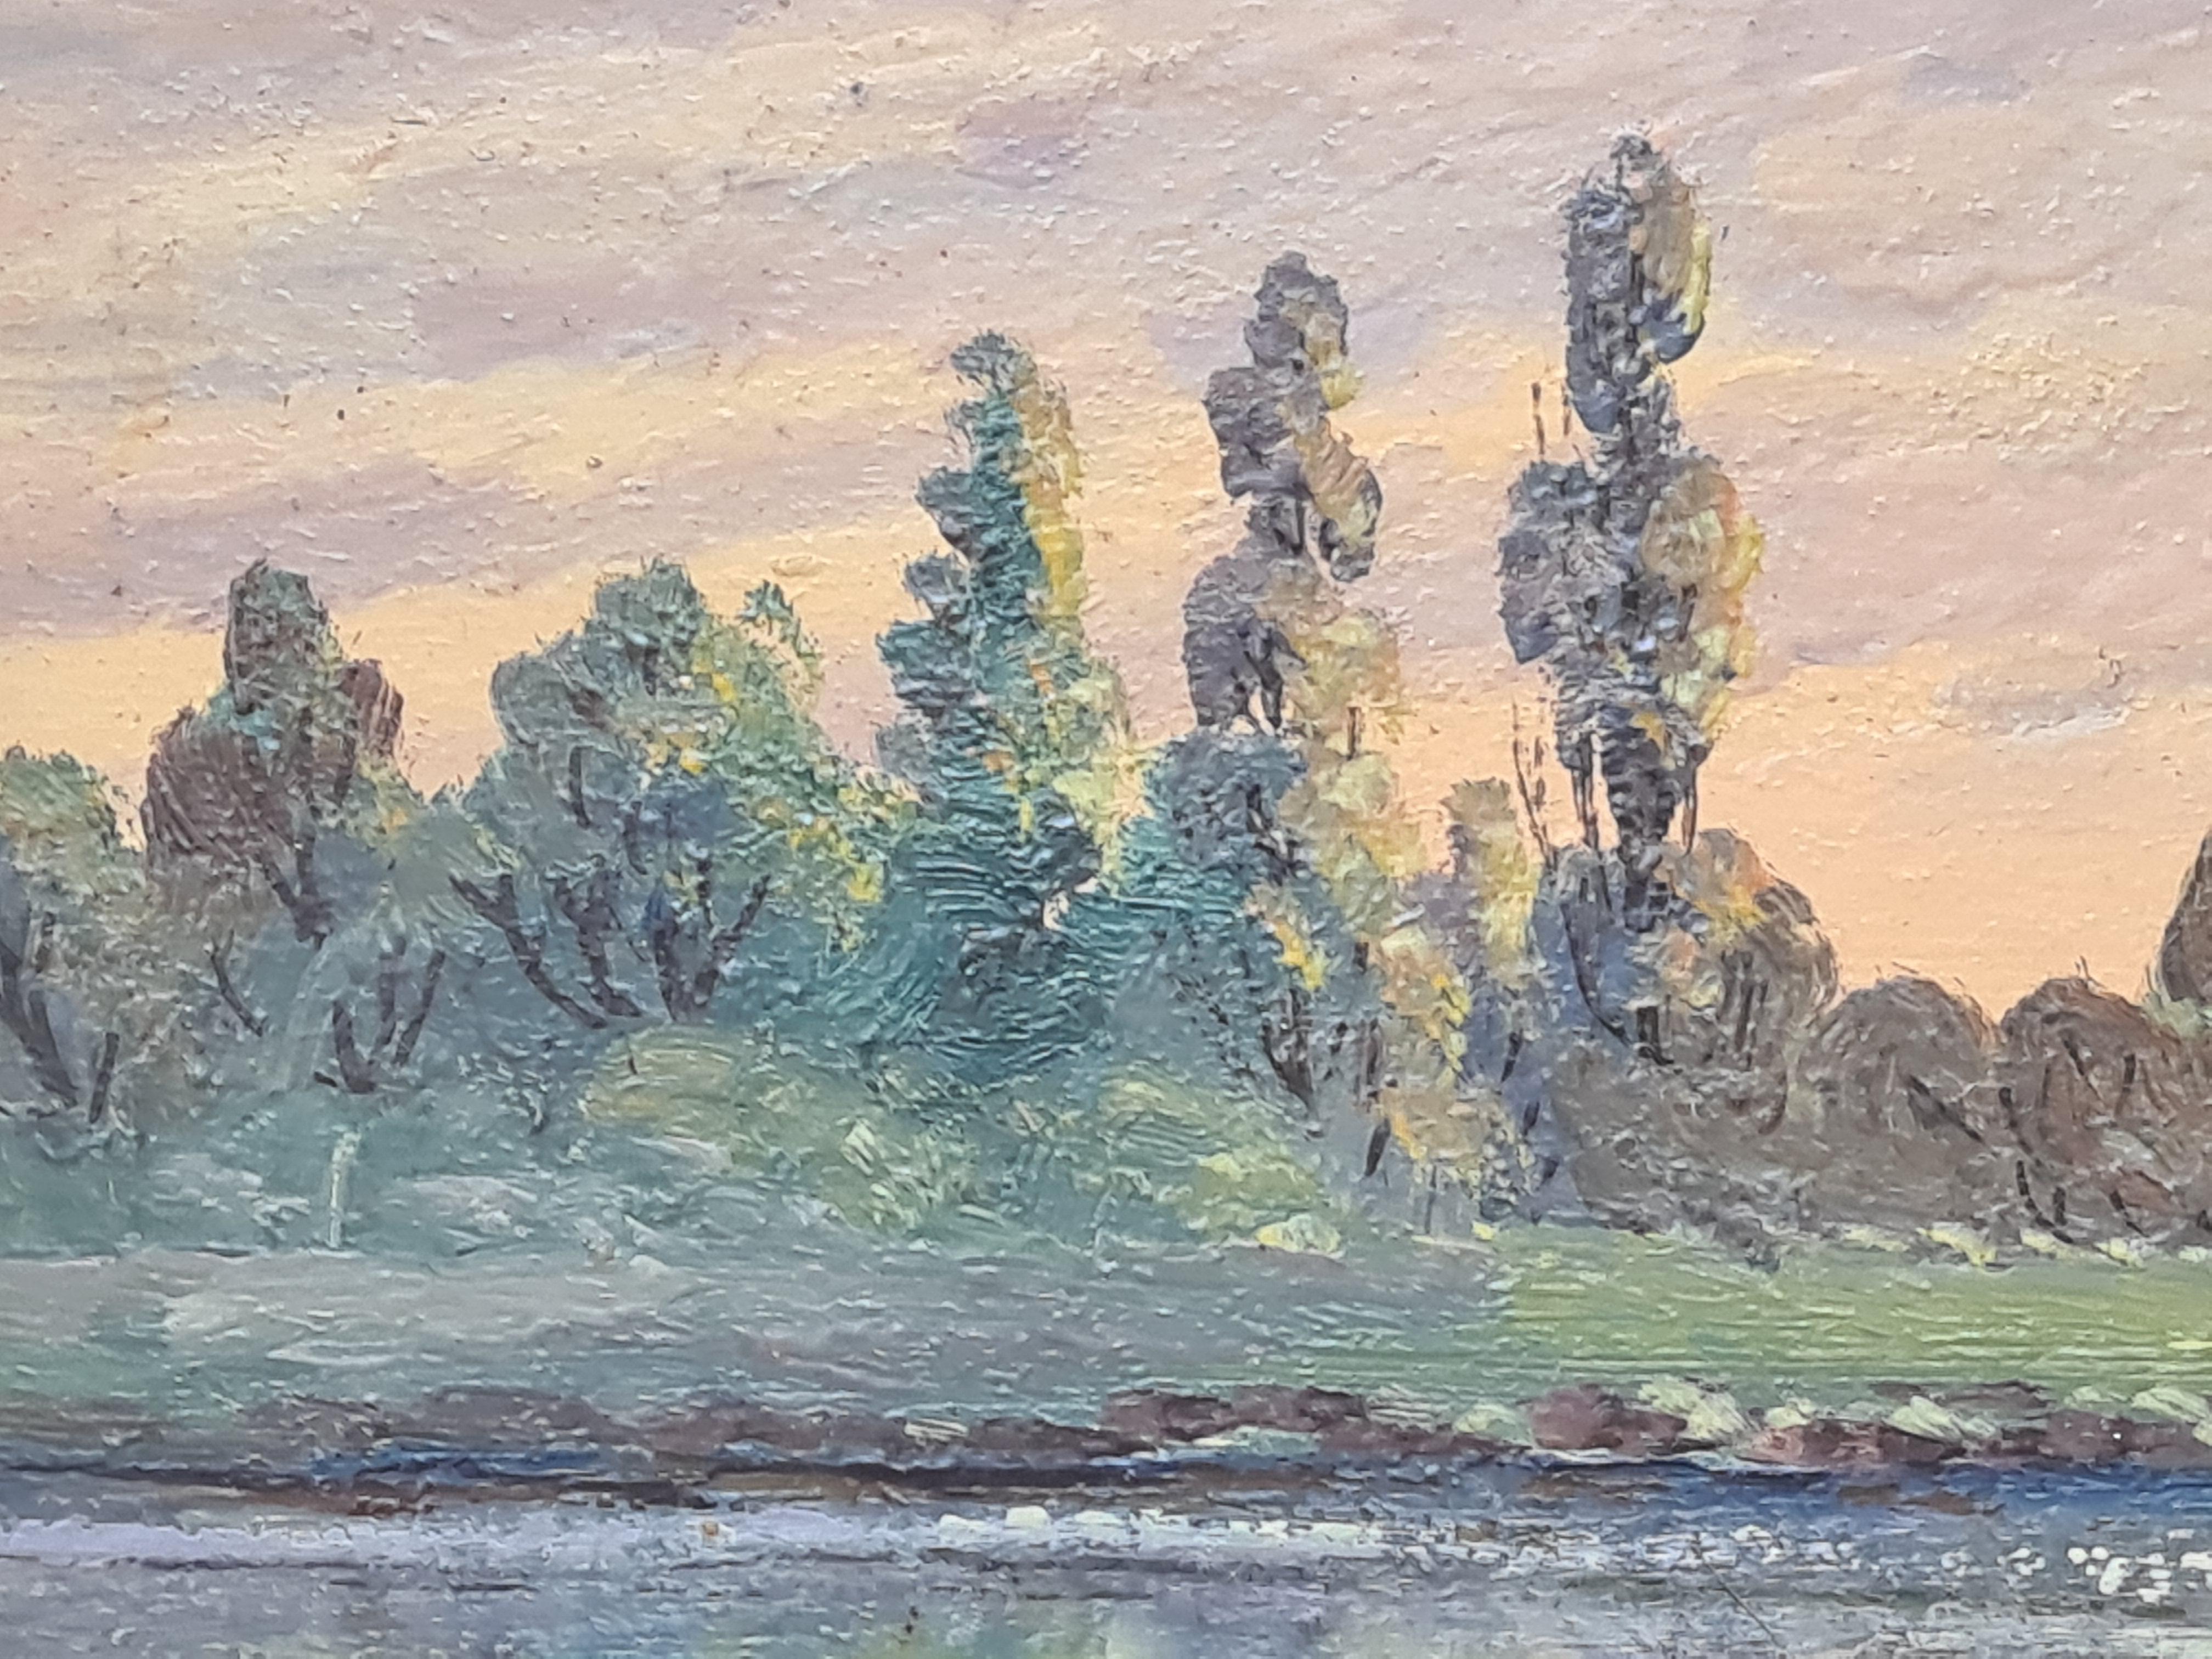 Un paysage idyllique peint à l'huile sur panneau par Boggio. Le tableau est signé en bas à gauche.

Une vue idéalisée d'un paysage lacustre avec des peupliers dans le style de l'école de Barbizon.